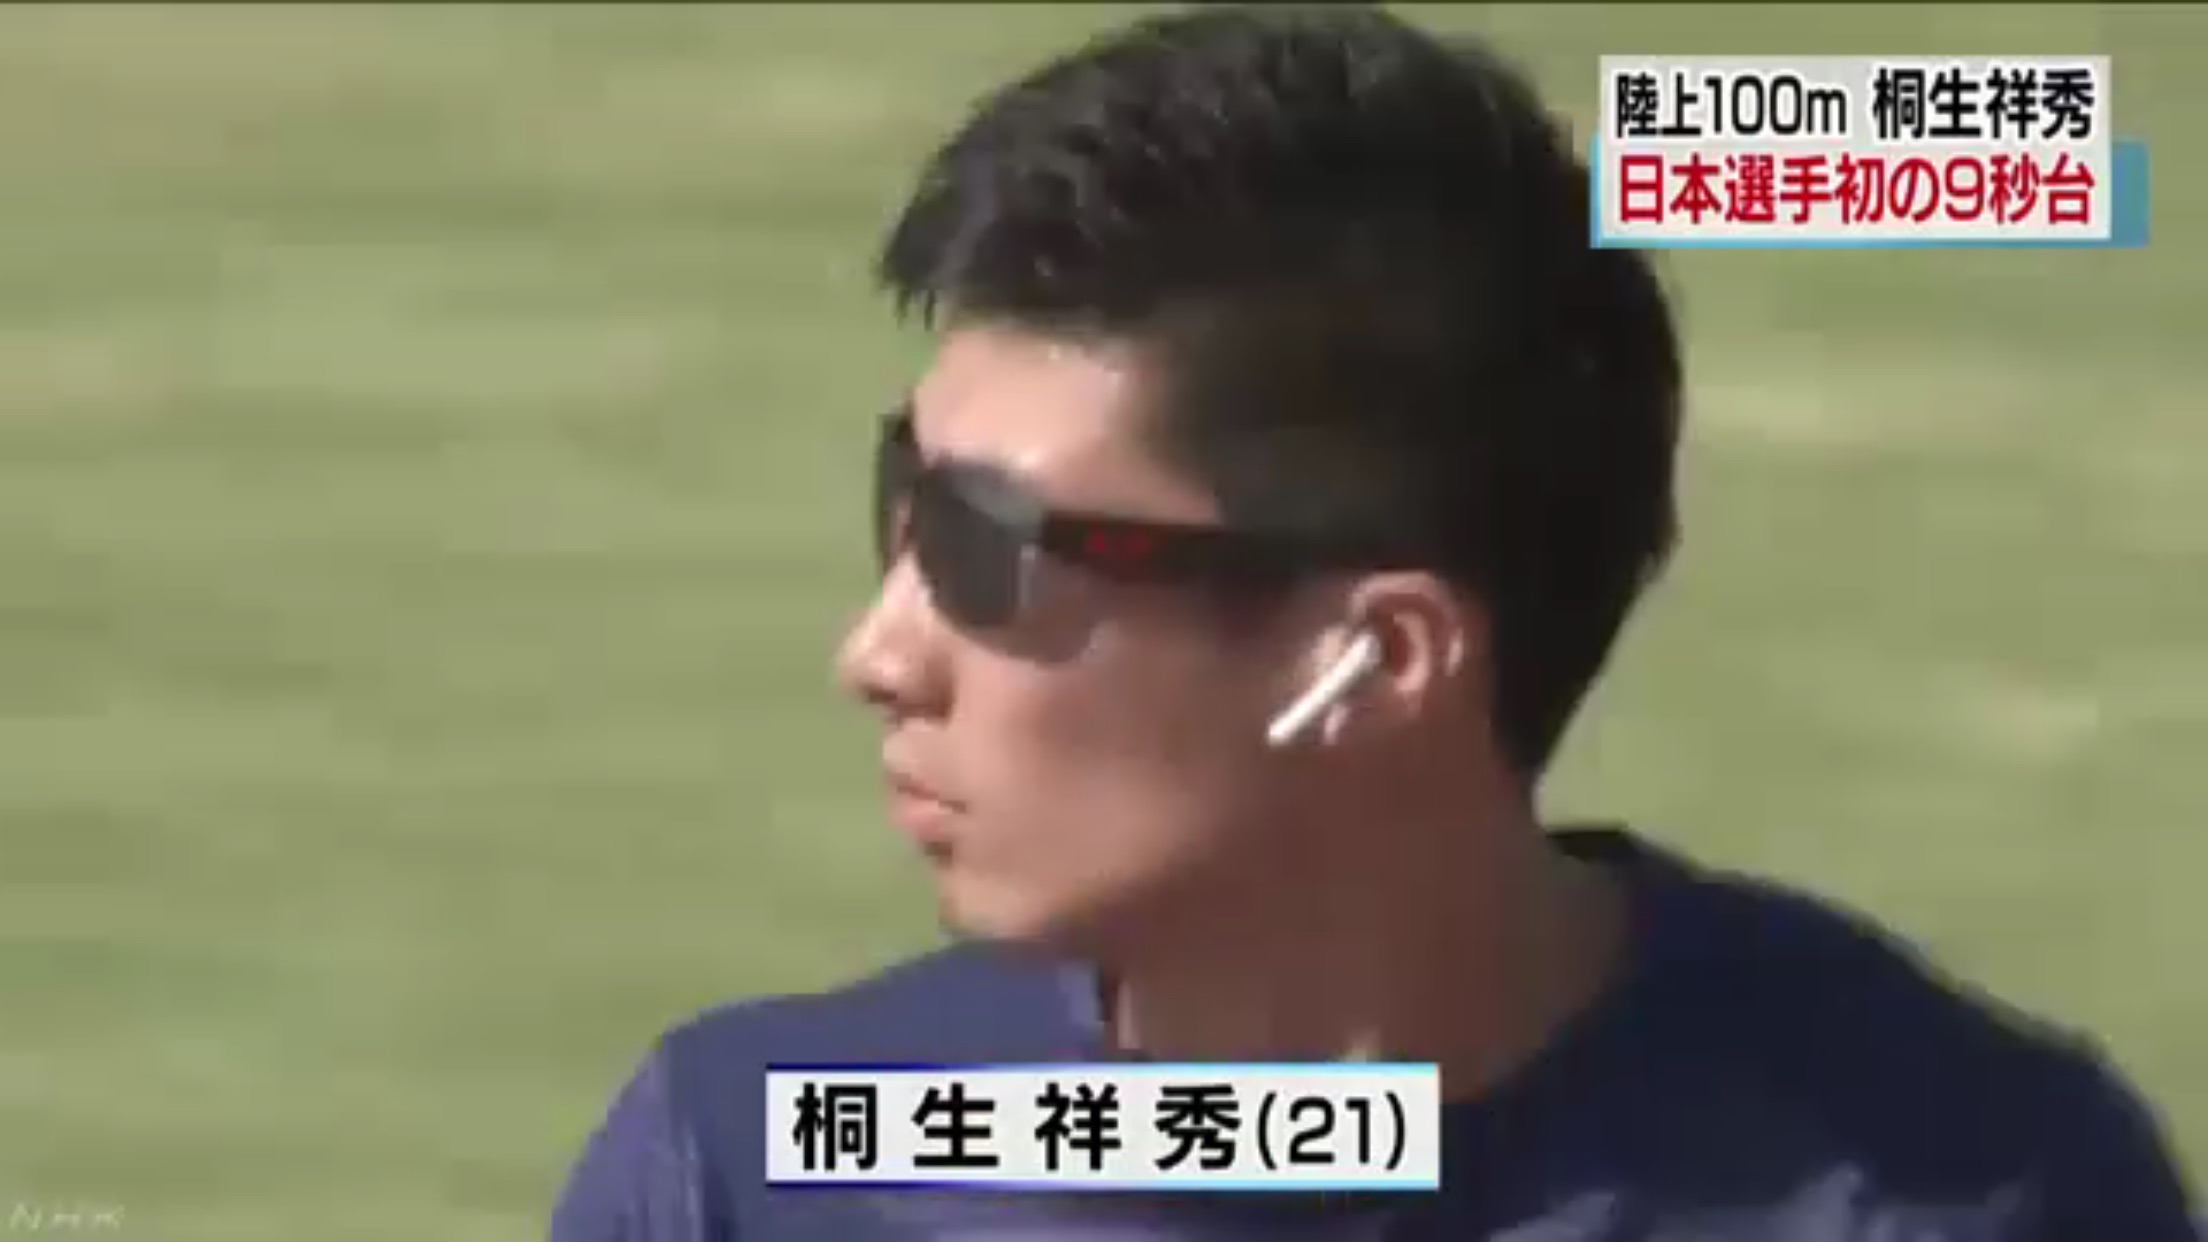 นักวิ่งกรีฑาชายญี่ปุ่น